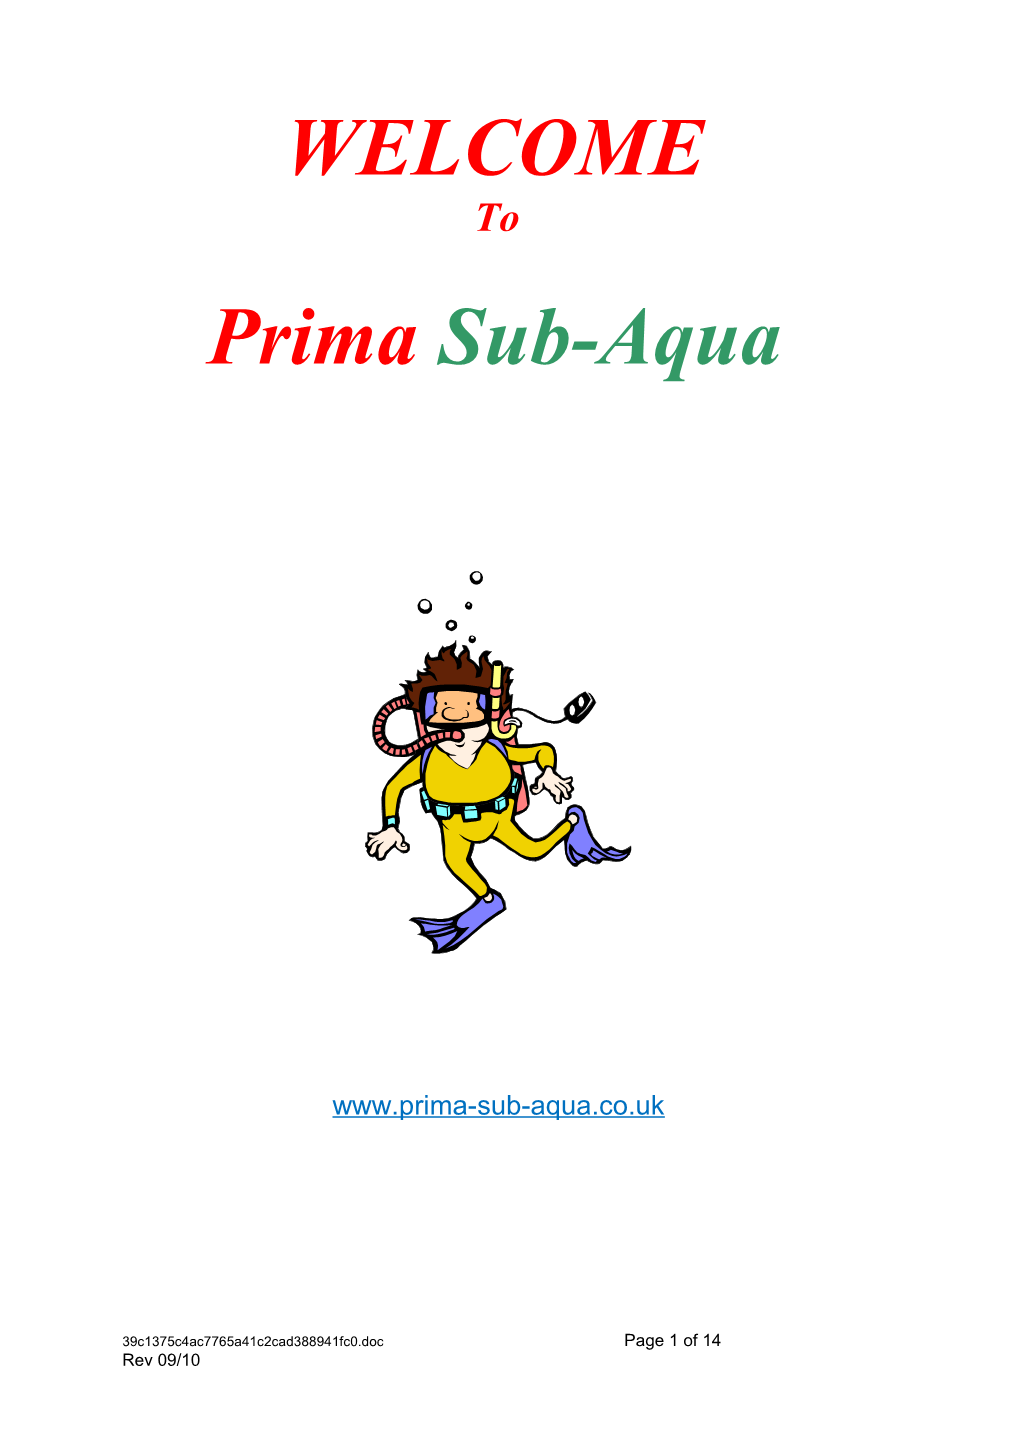 About Prima Sub Aqua